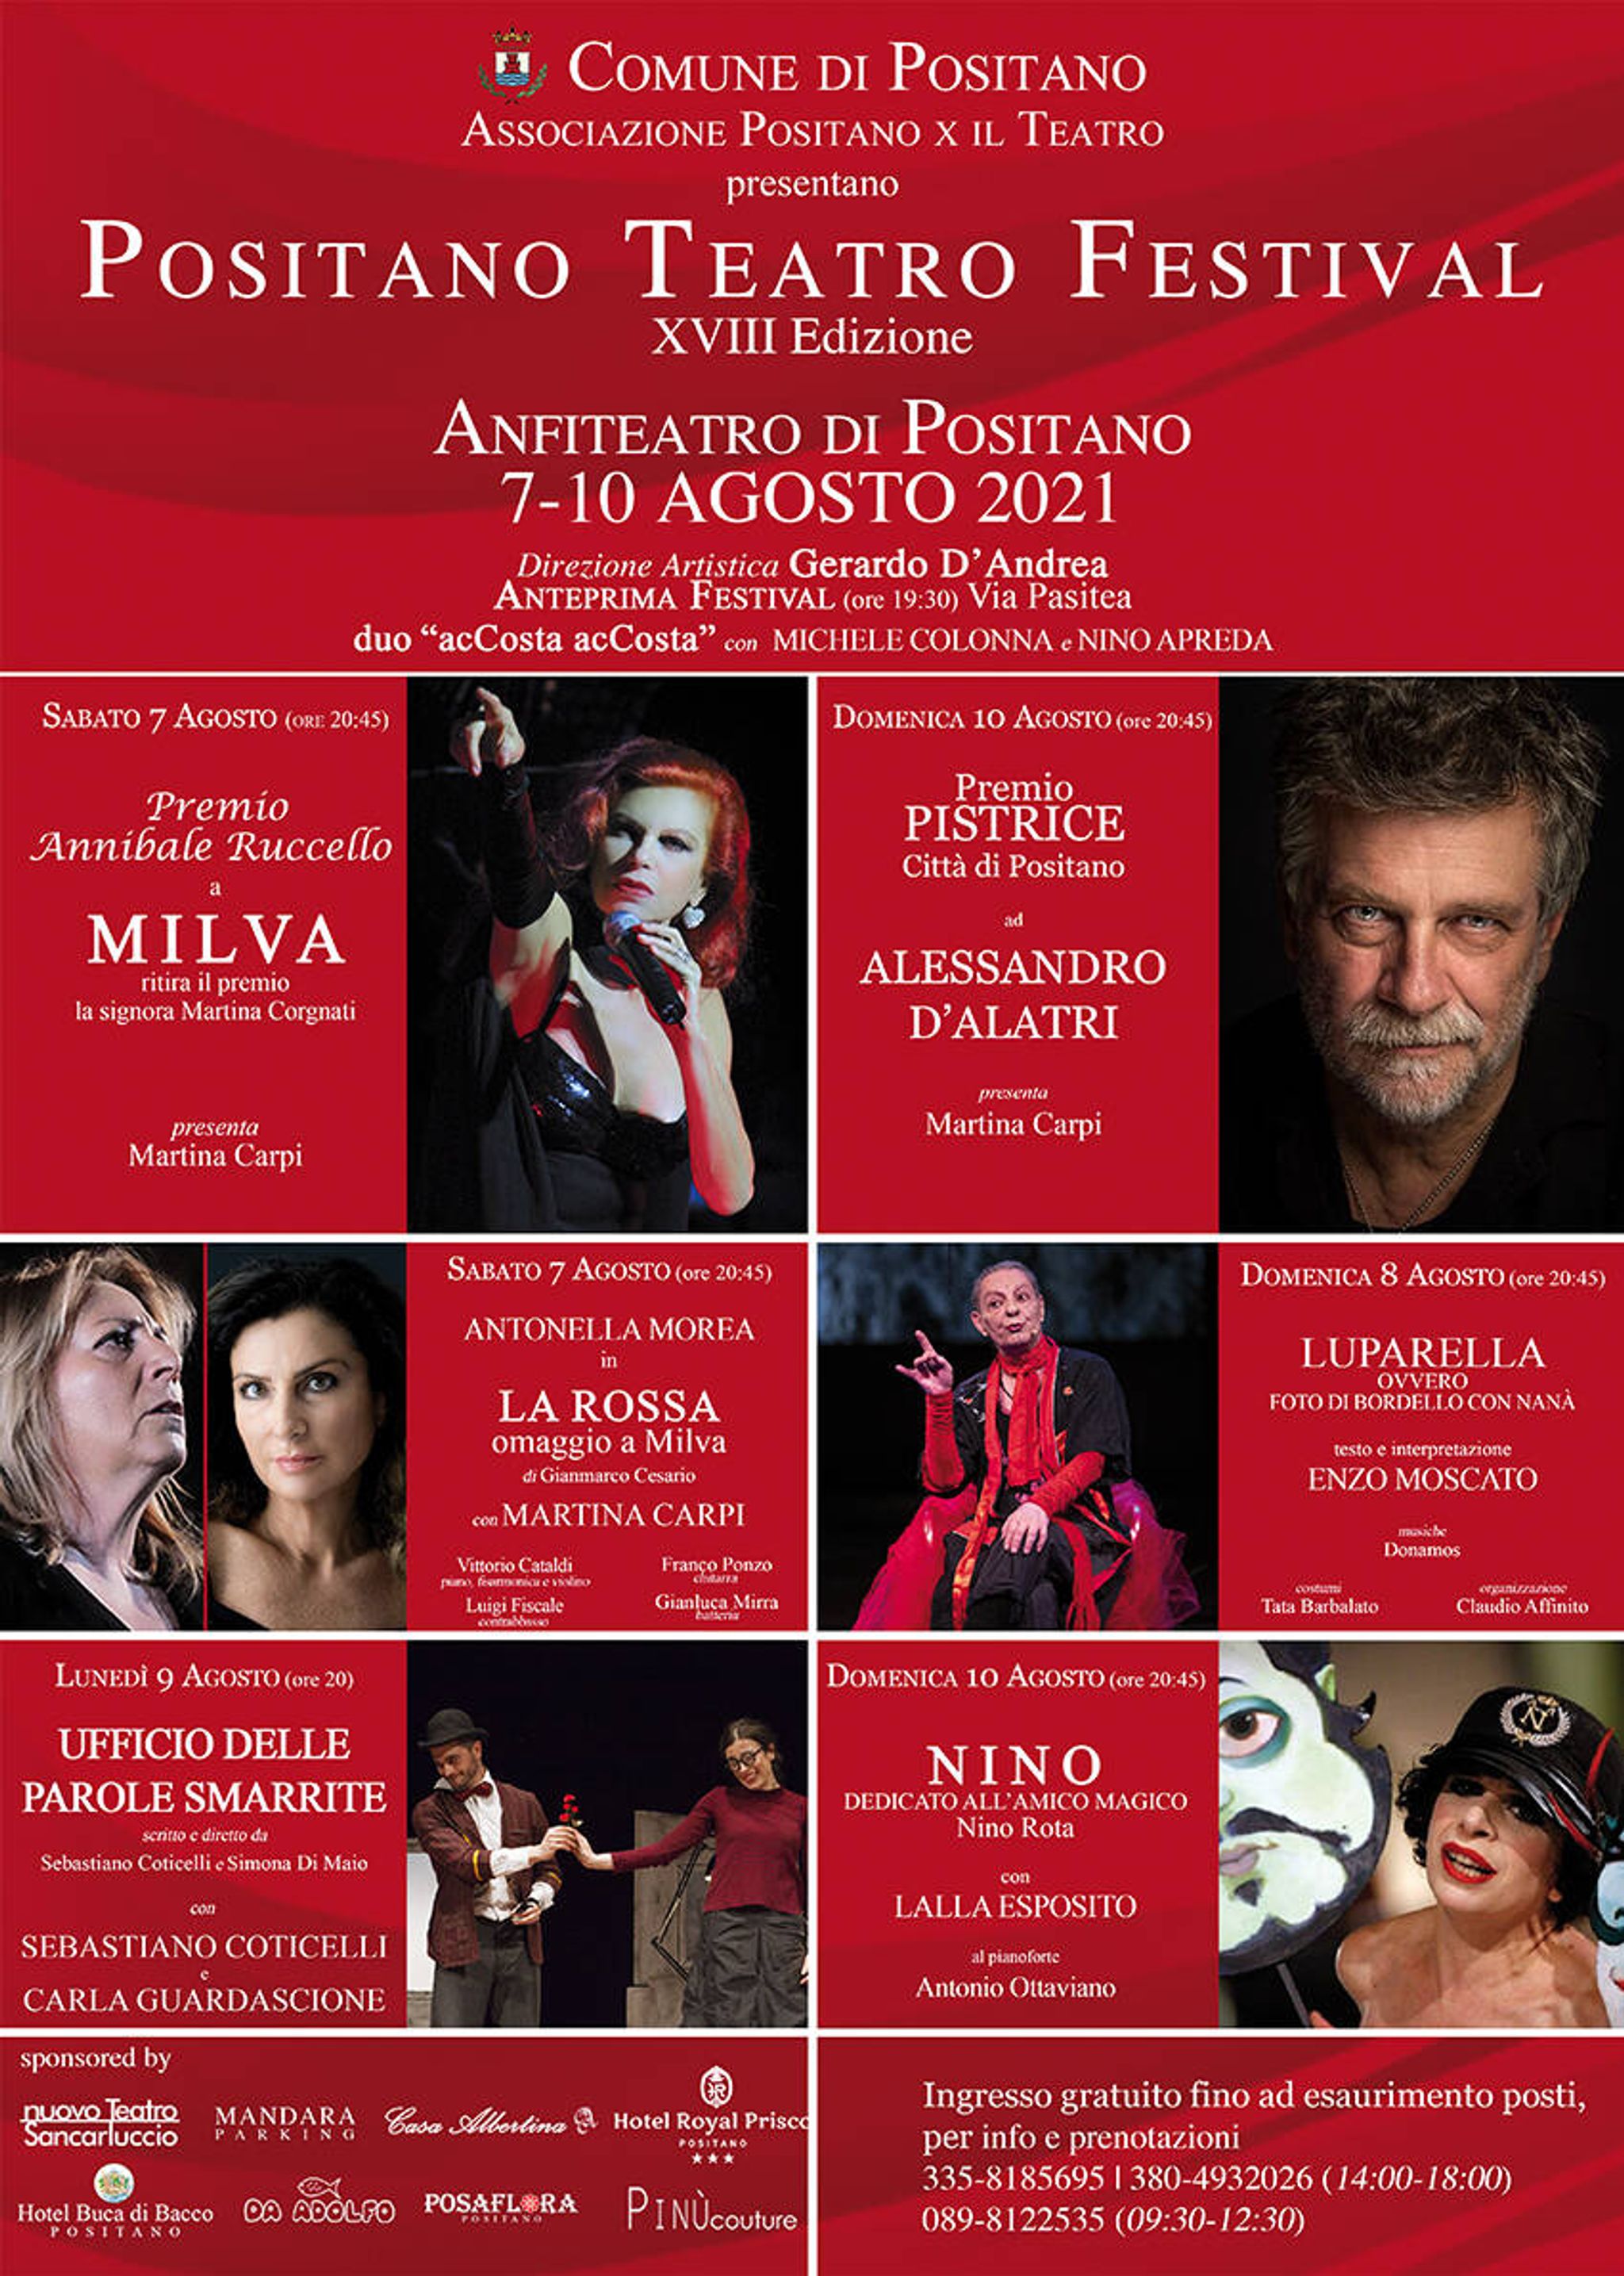 Positano Theatre Festival 2021